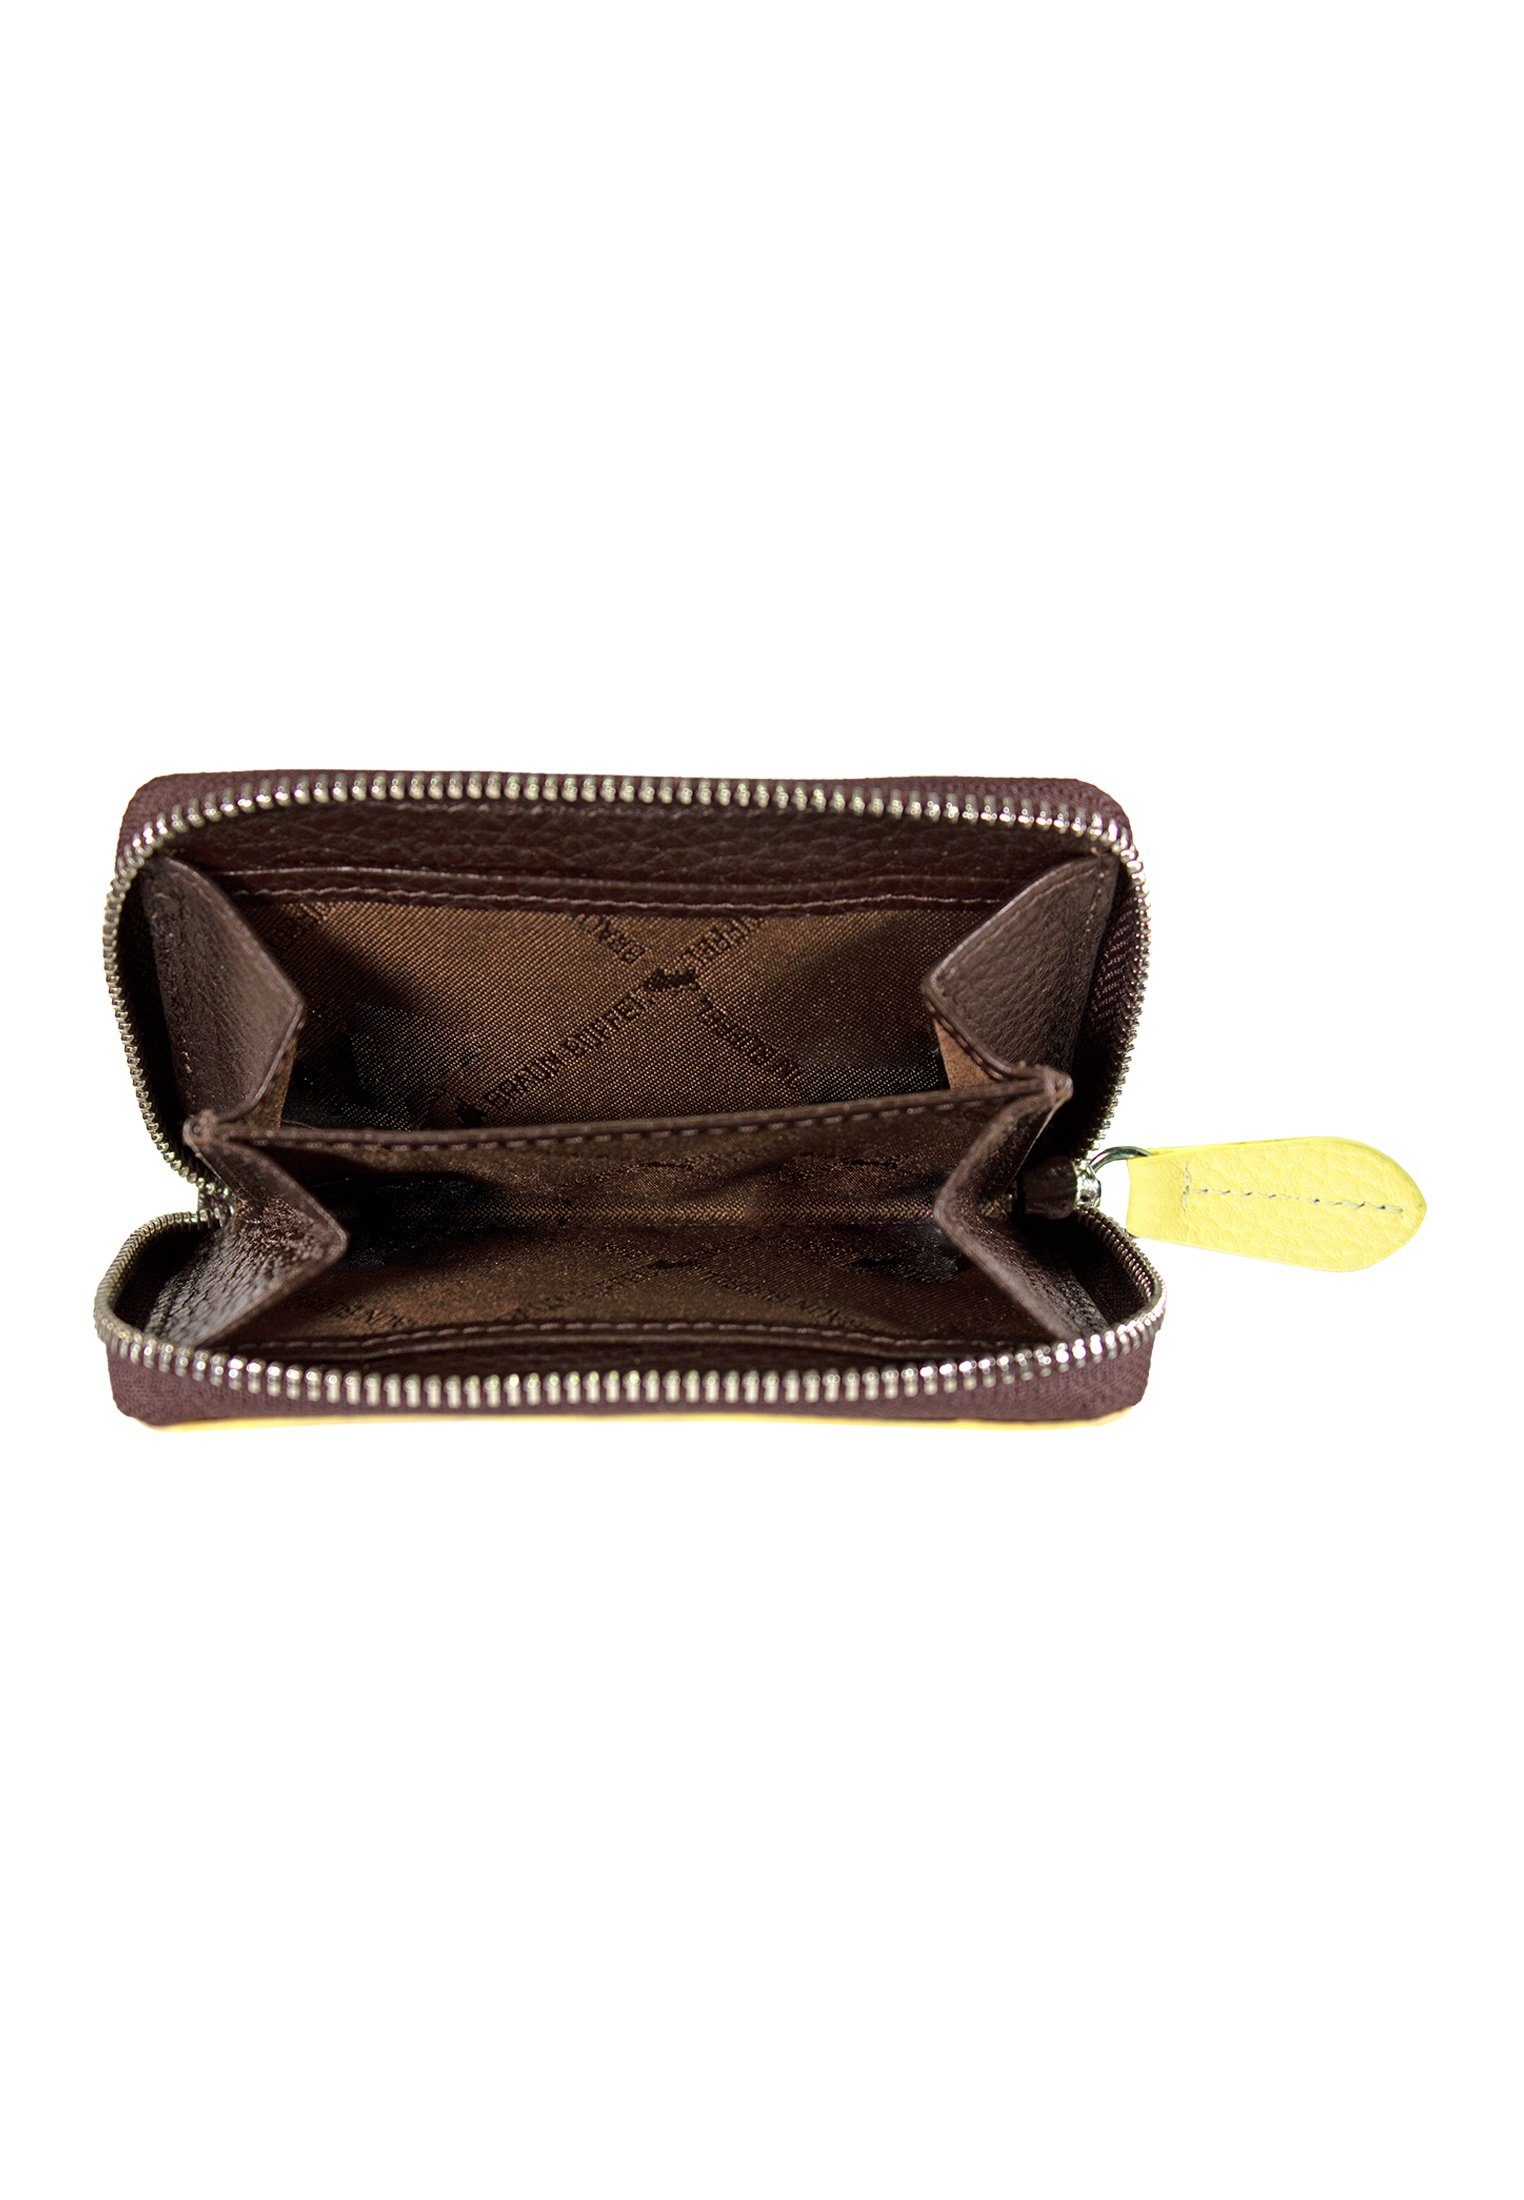 ELIN, RFID-Schutz Braun braun-gelb mit Geldbörse Büffel